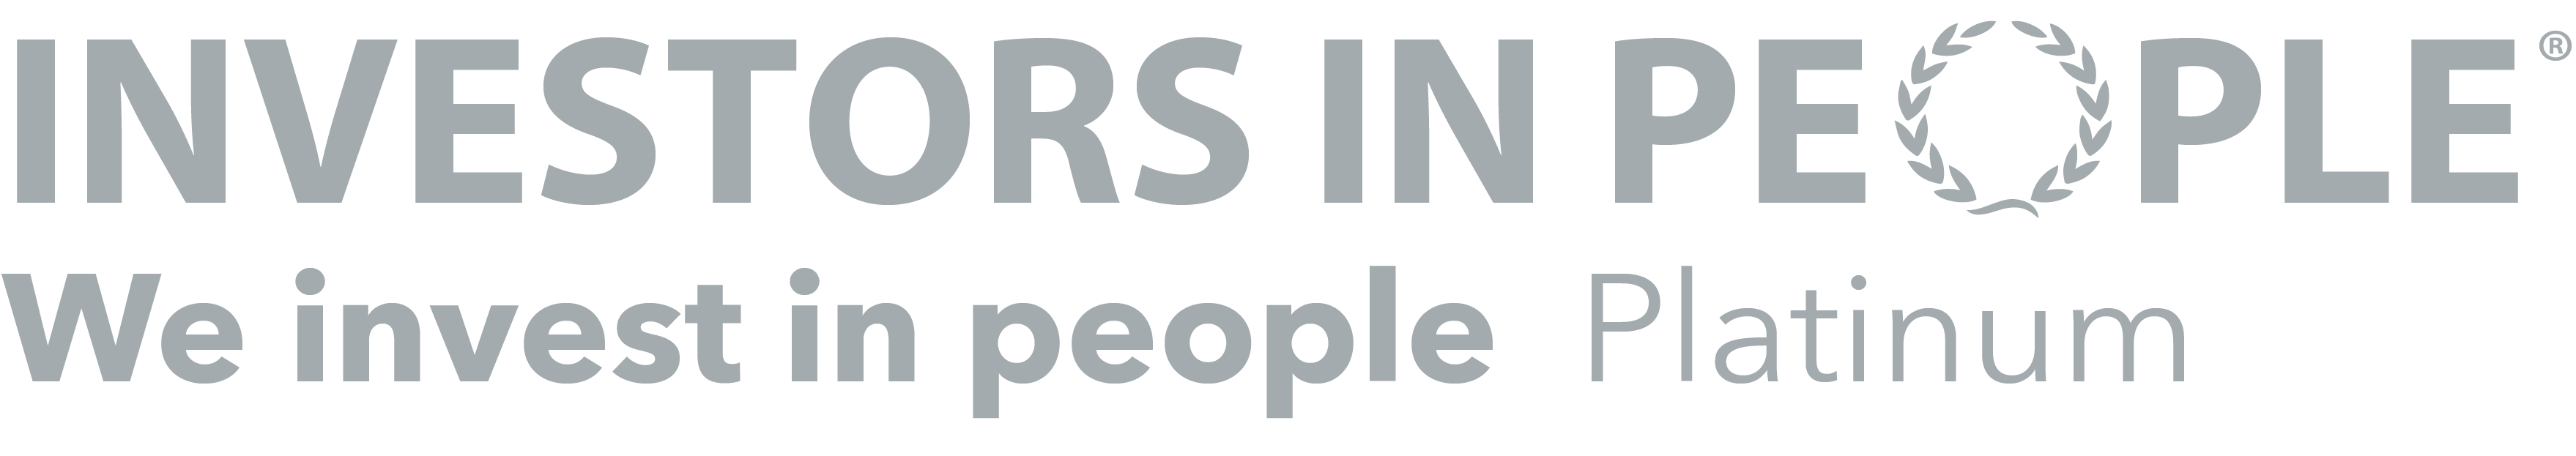 investors in people platinum logo